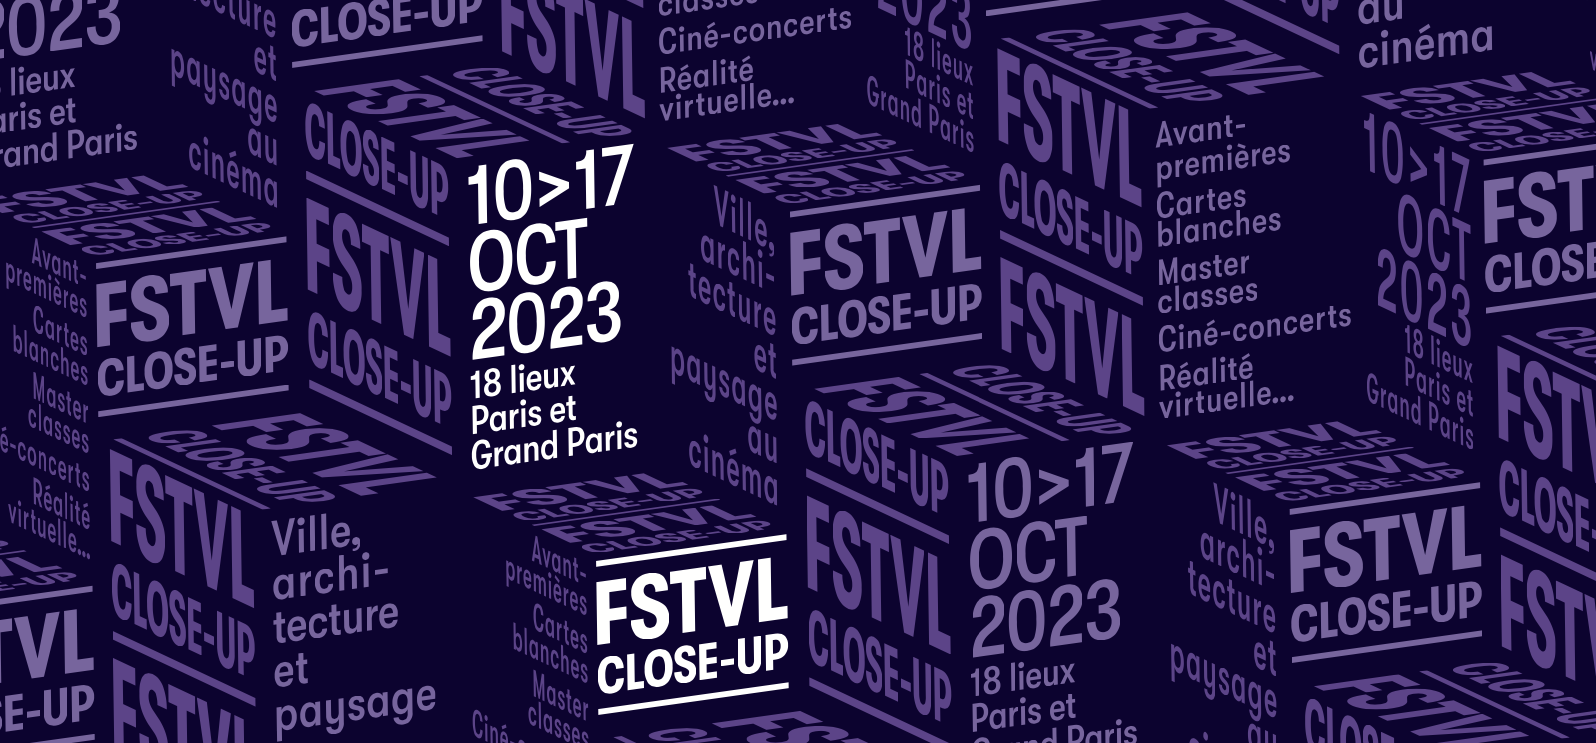 festival-close-up-villes-re-imaginees